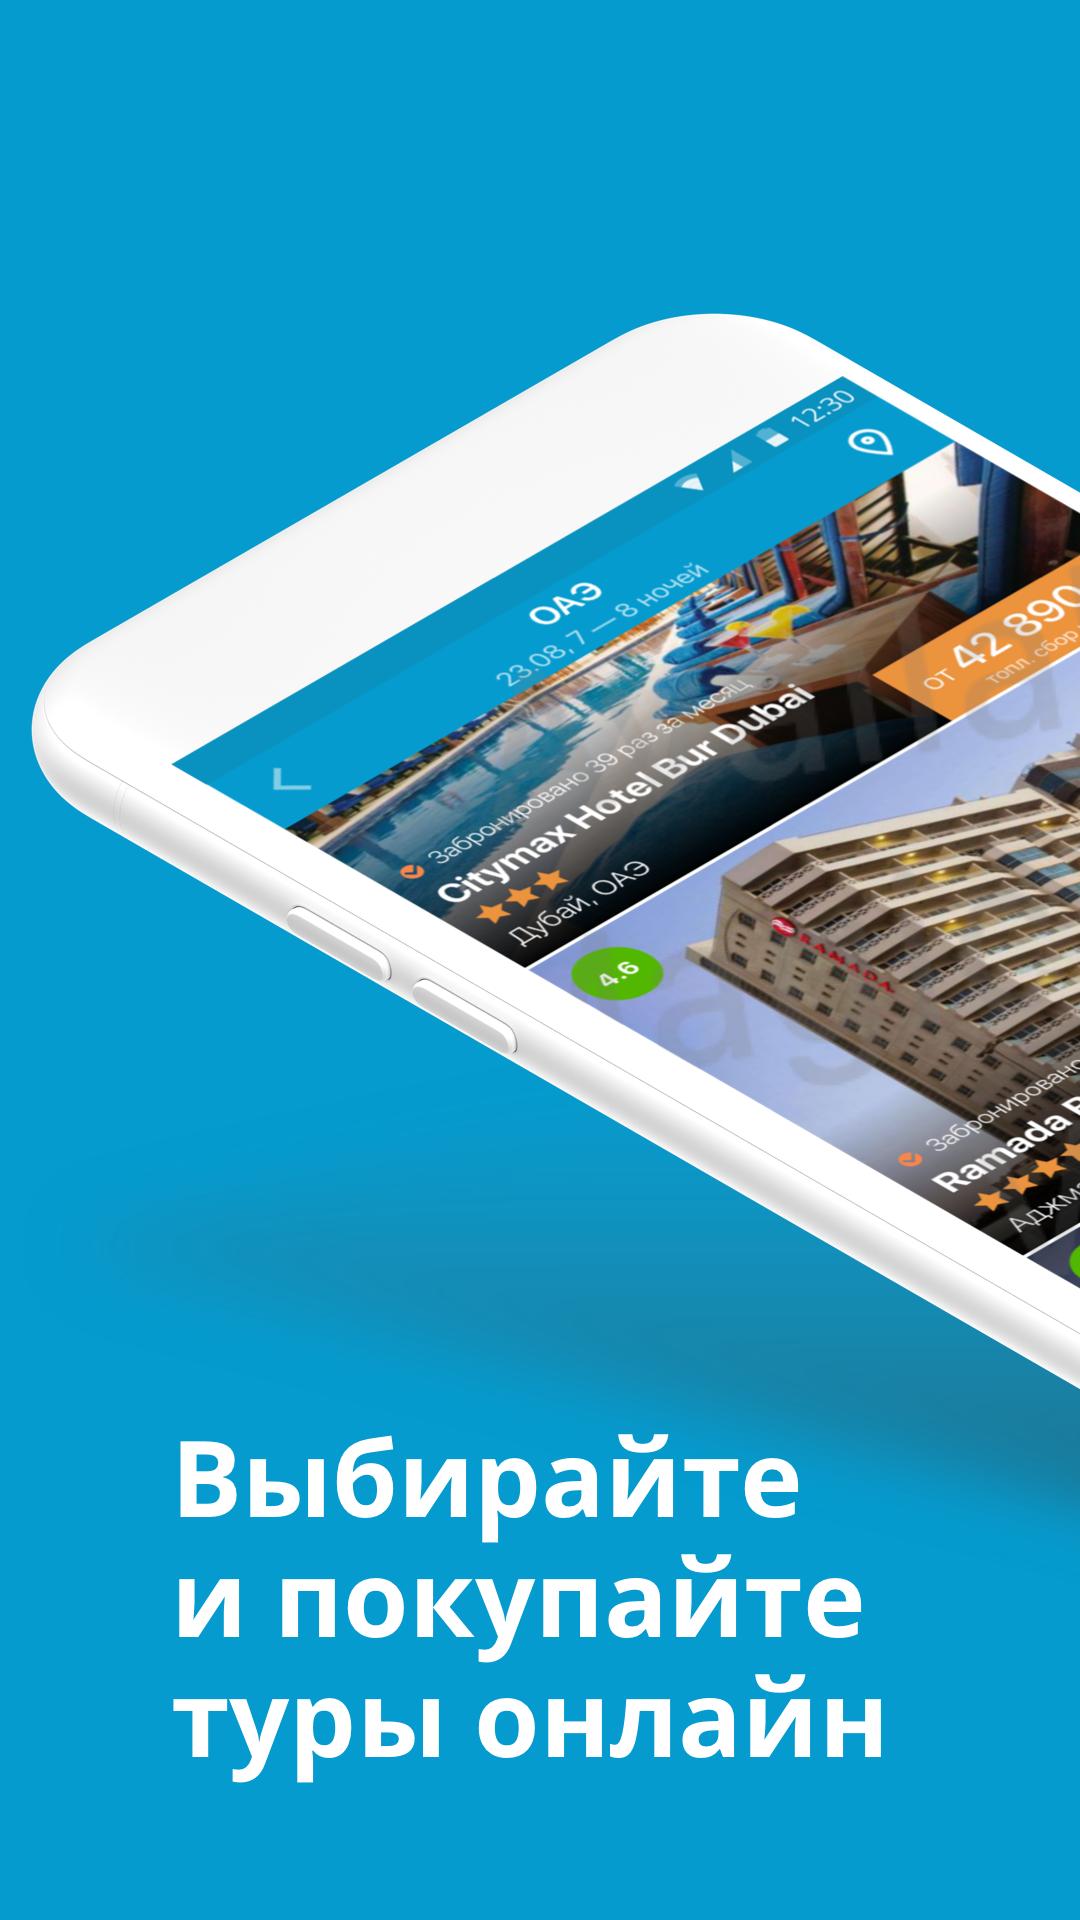 Travelata.ru Все горящие туры и путевки онлайн 3.6.7 Screenshot 1